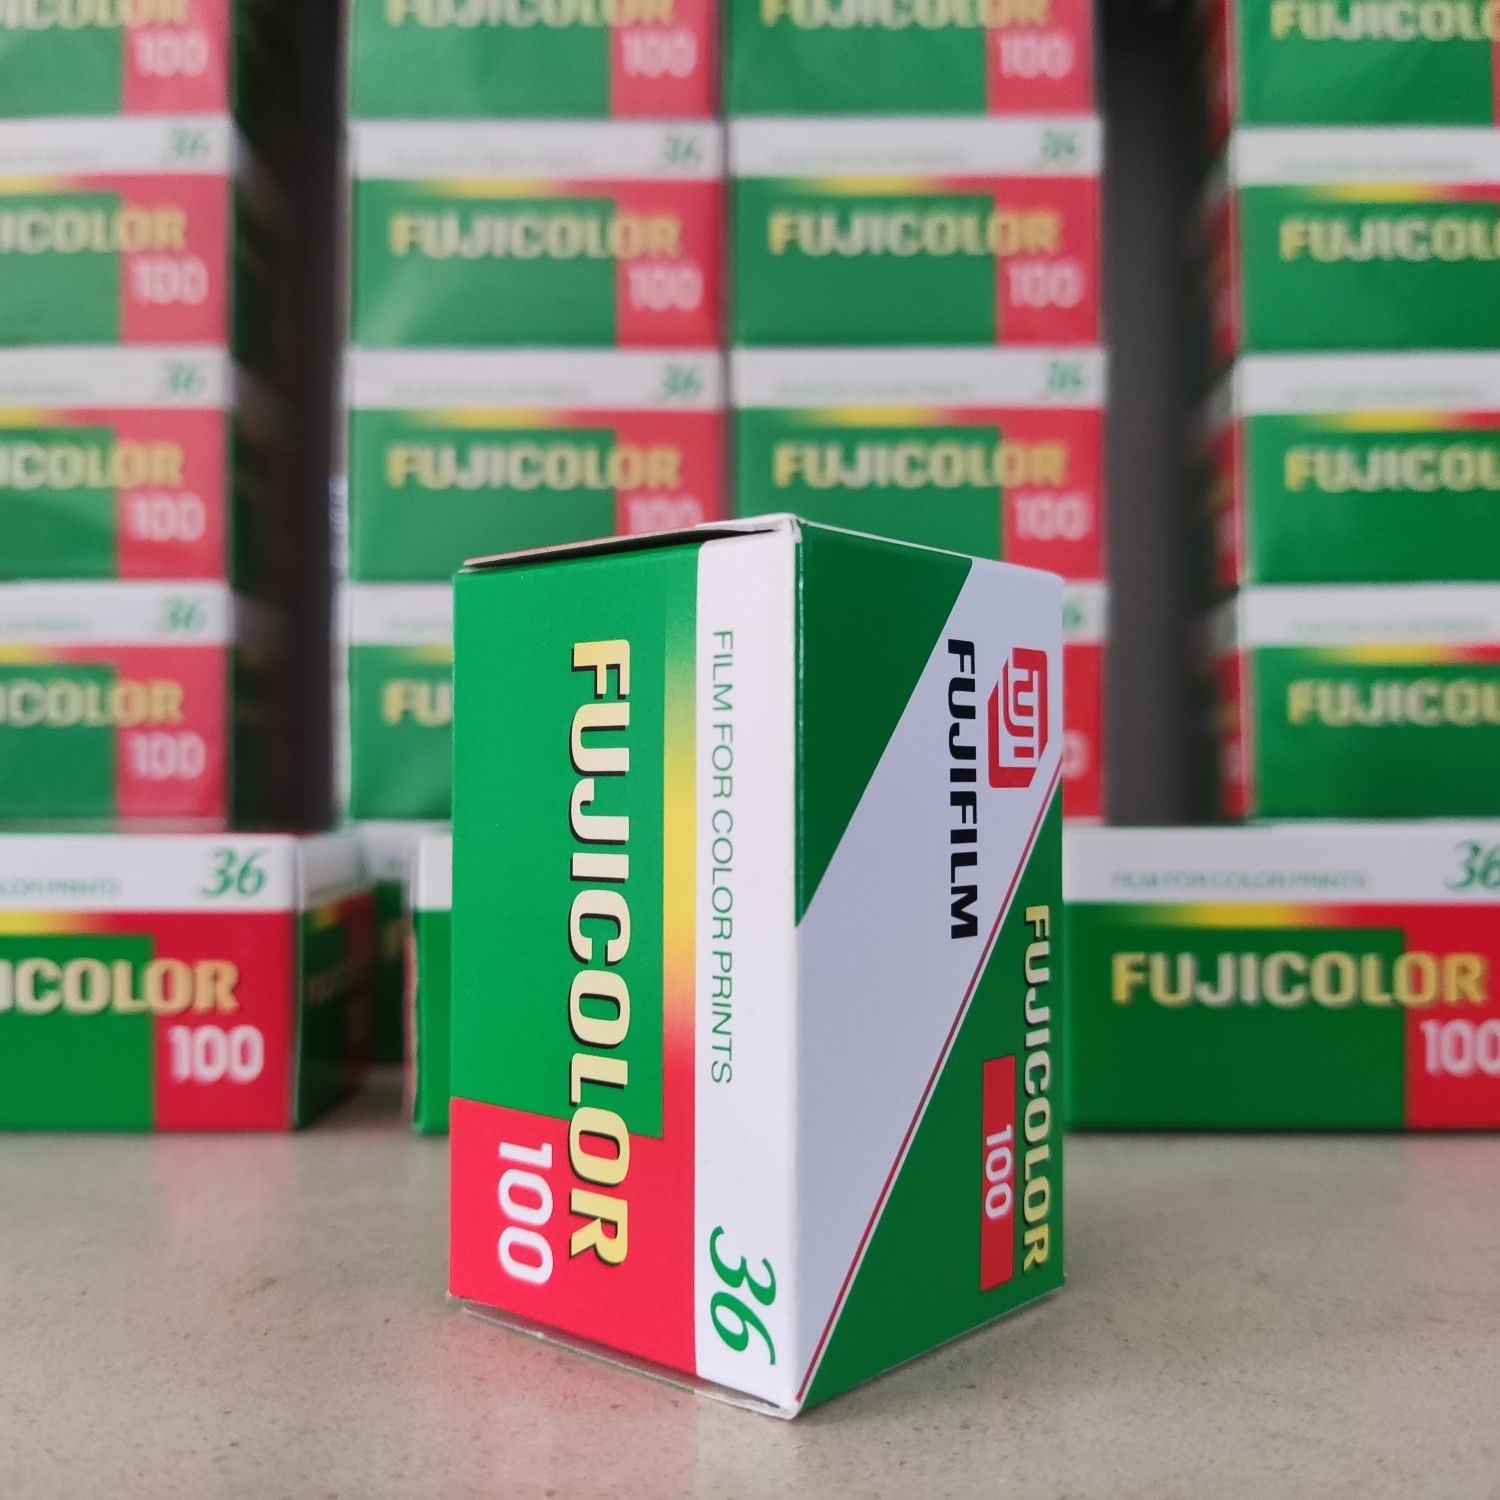 Fujifilm Fujicolor ISO 100 - 36 exp. - caixa